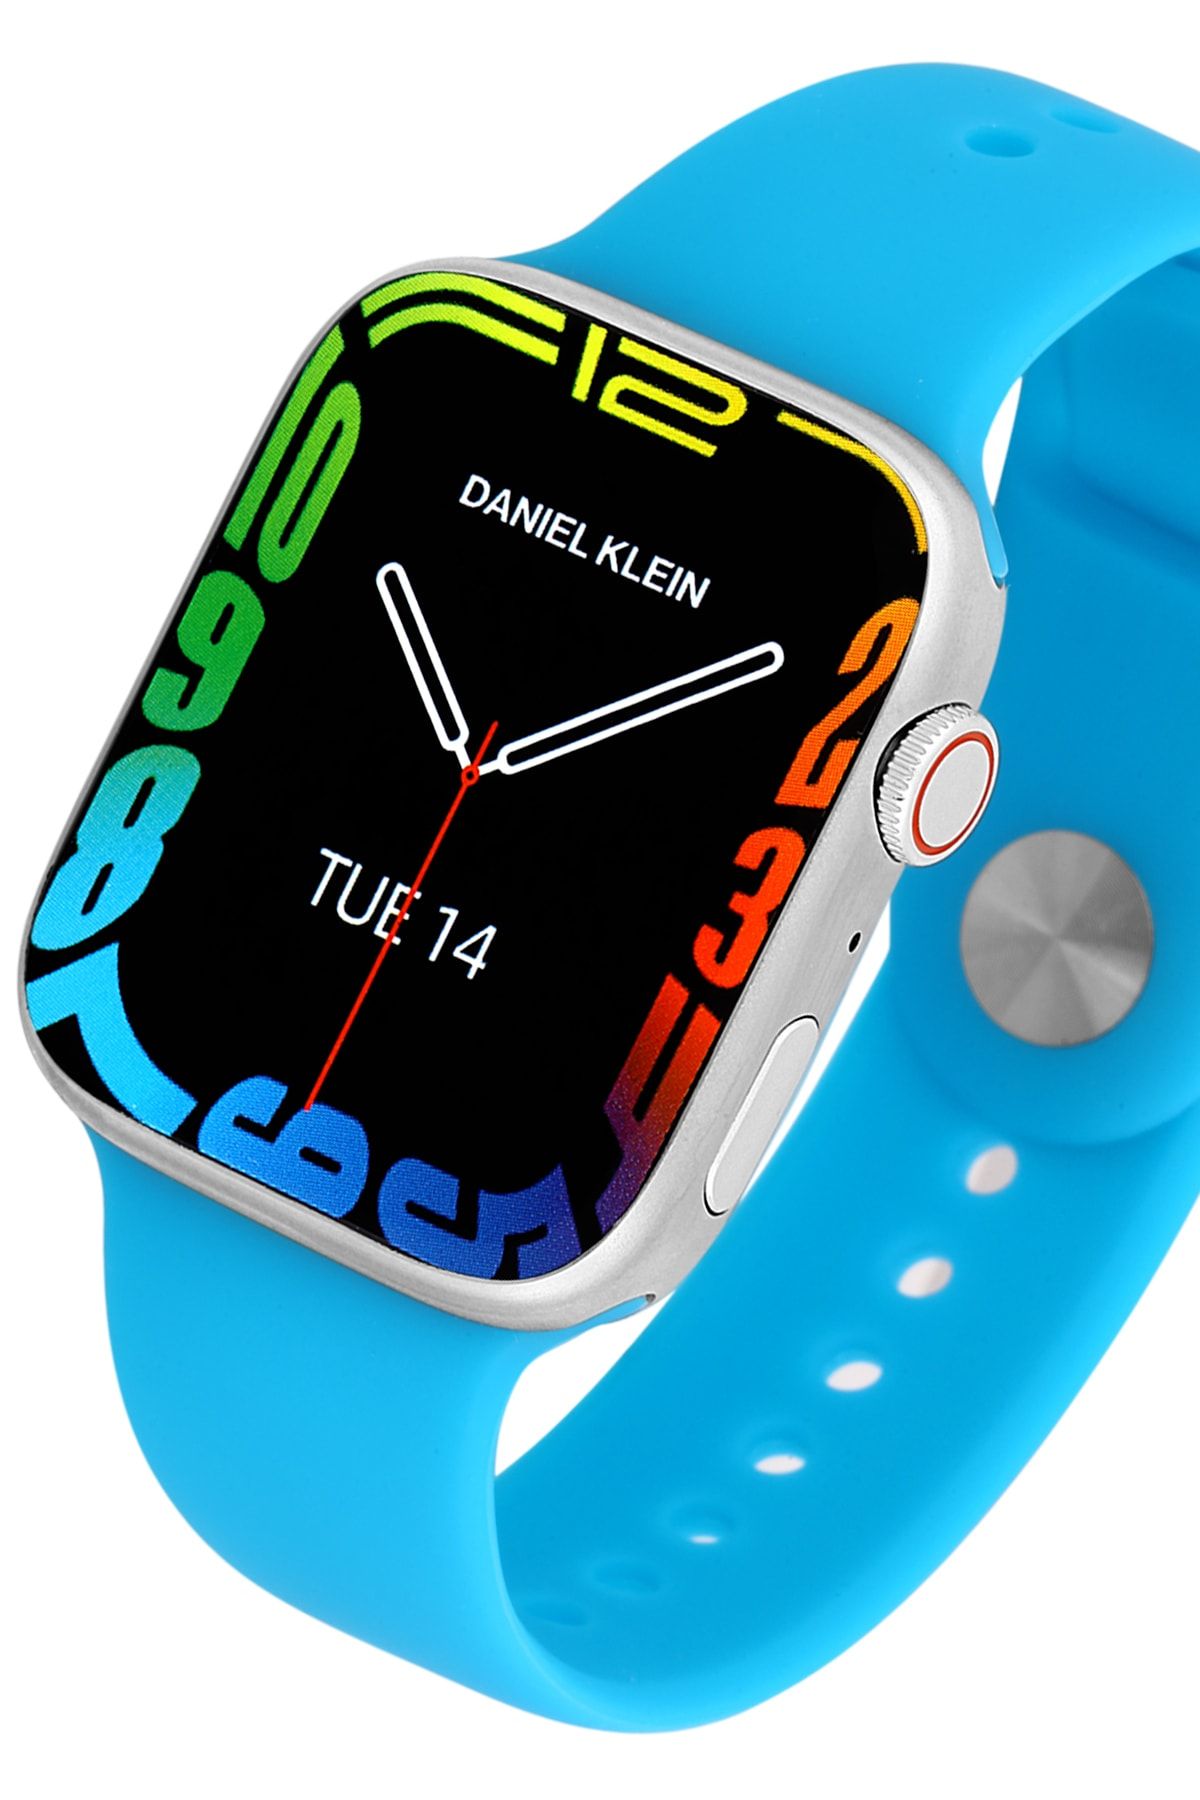 Daniel Klein Smart Watch - Akıllı Saat, Ios-android Uyumlu, 1.95 Inc, Çelik Kasa, Konuşma Özellikli Elg21